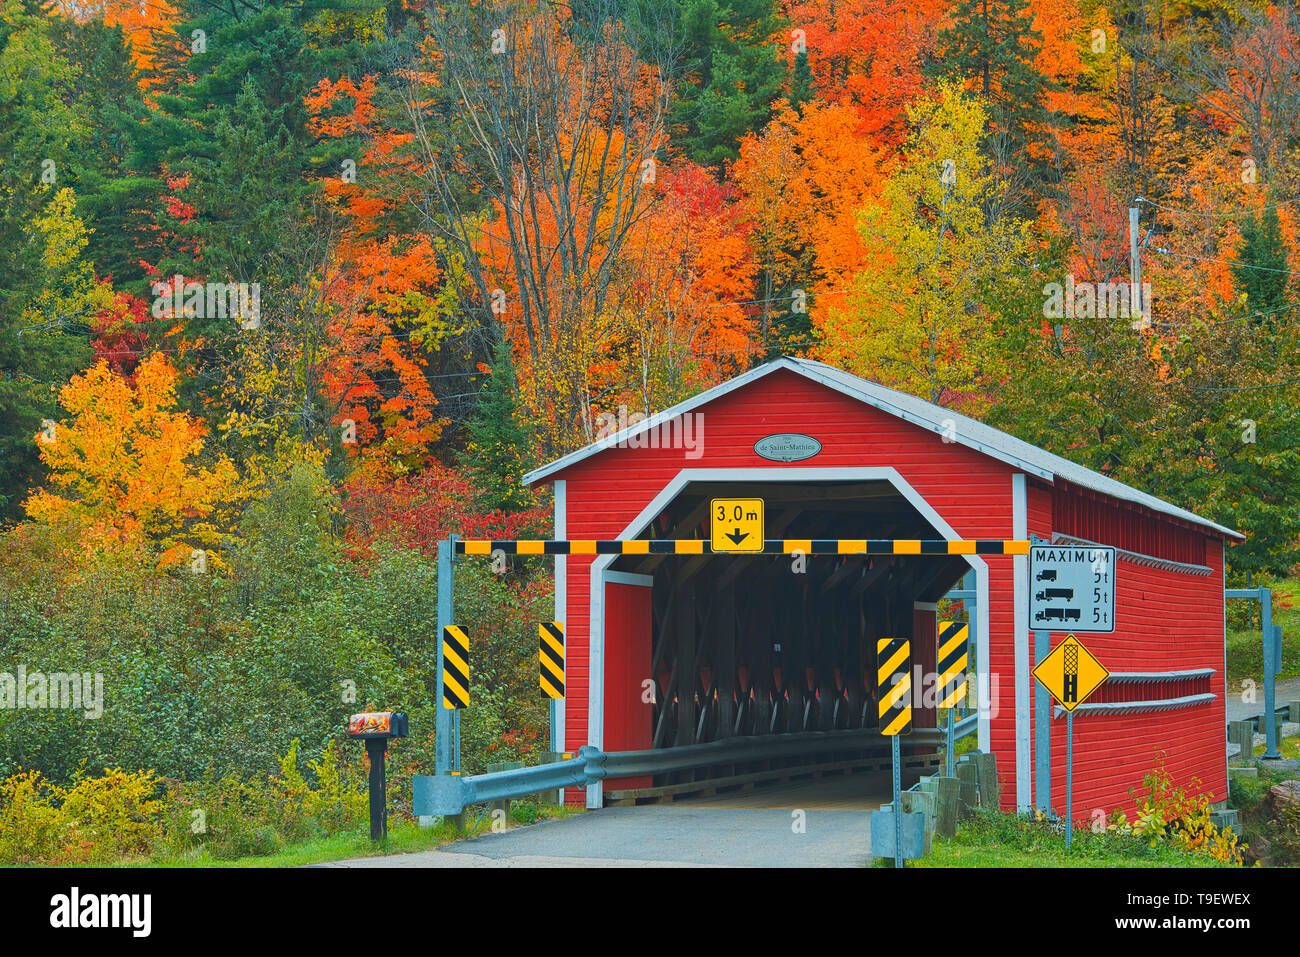 Covered bridge (pont couvert)  de Saint-Mathieu over the Shawinigan River, Autumn  colors, Great Lakes - St. Lawrence Forest Region, Saint-Mathieu-du-Parc, Quebec, Canada Stock Photo